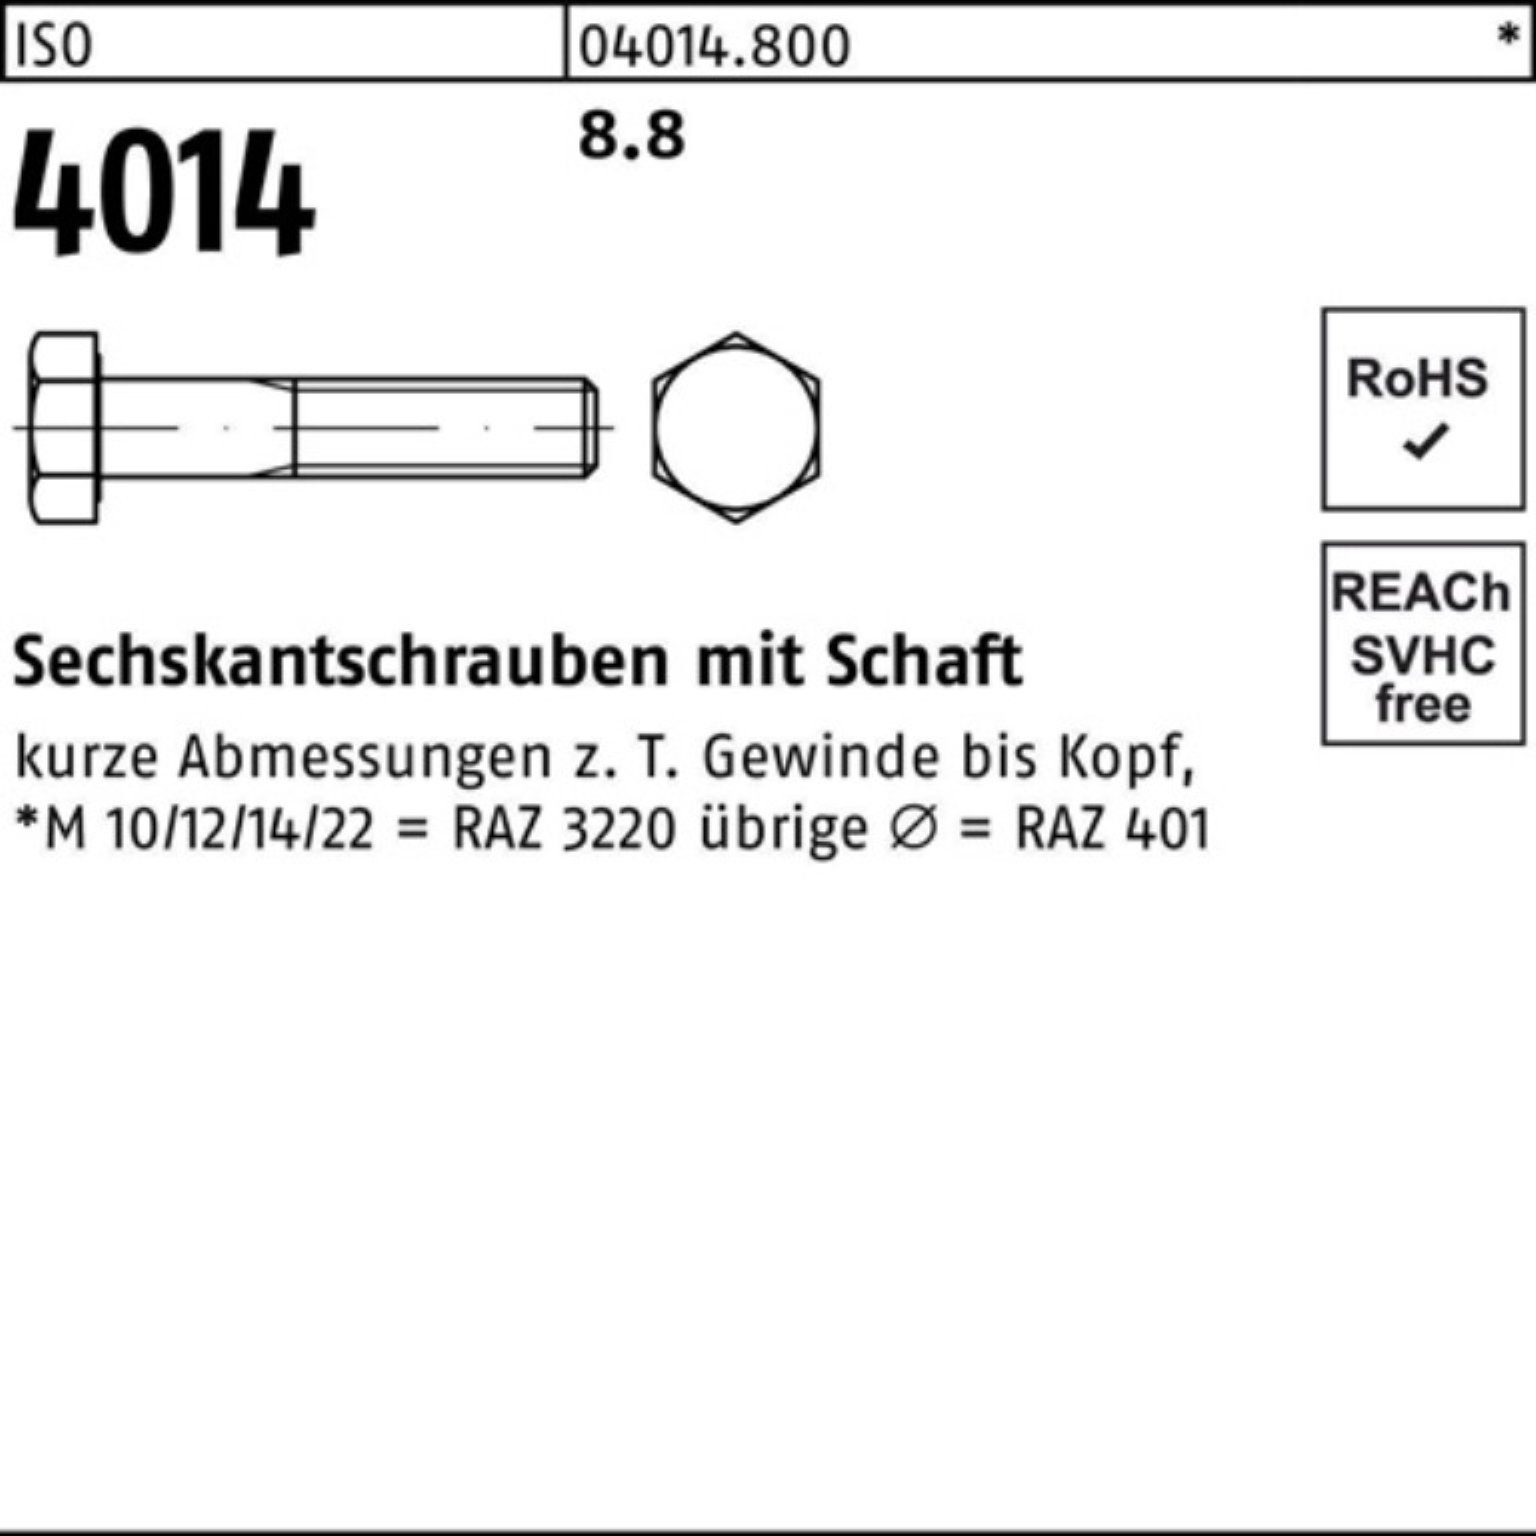 ISO Sechskantschraube M10x Sechskantschraube 4014 100er 65 Schaft Bufab 100 Stück Pack IS 8.8